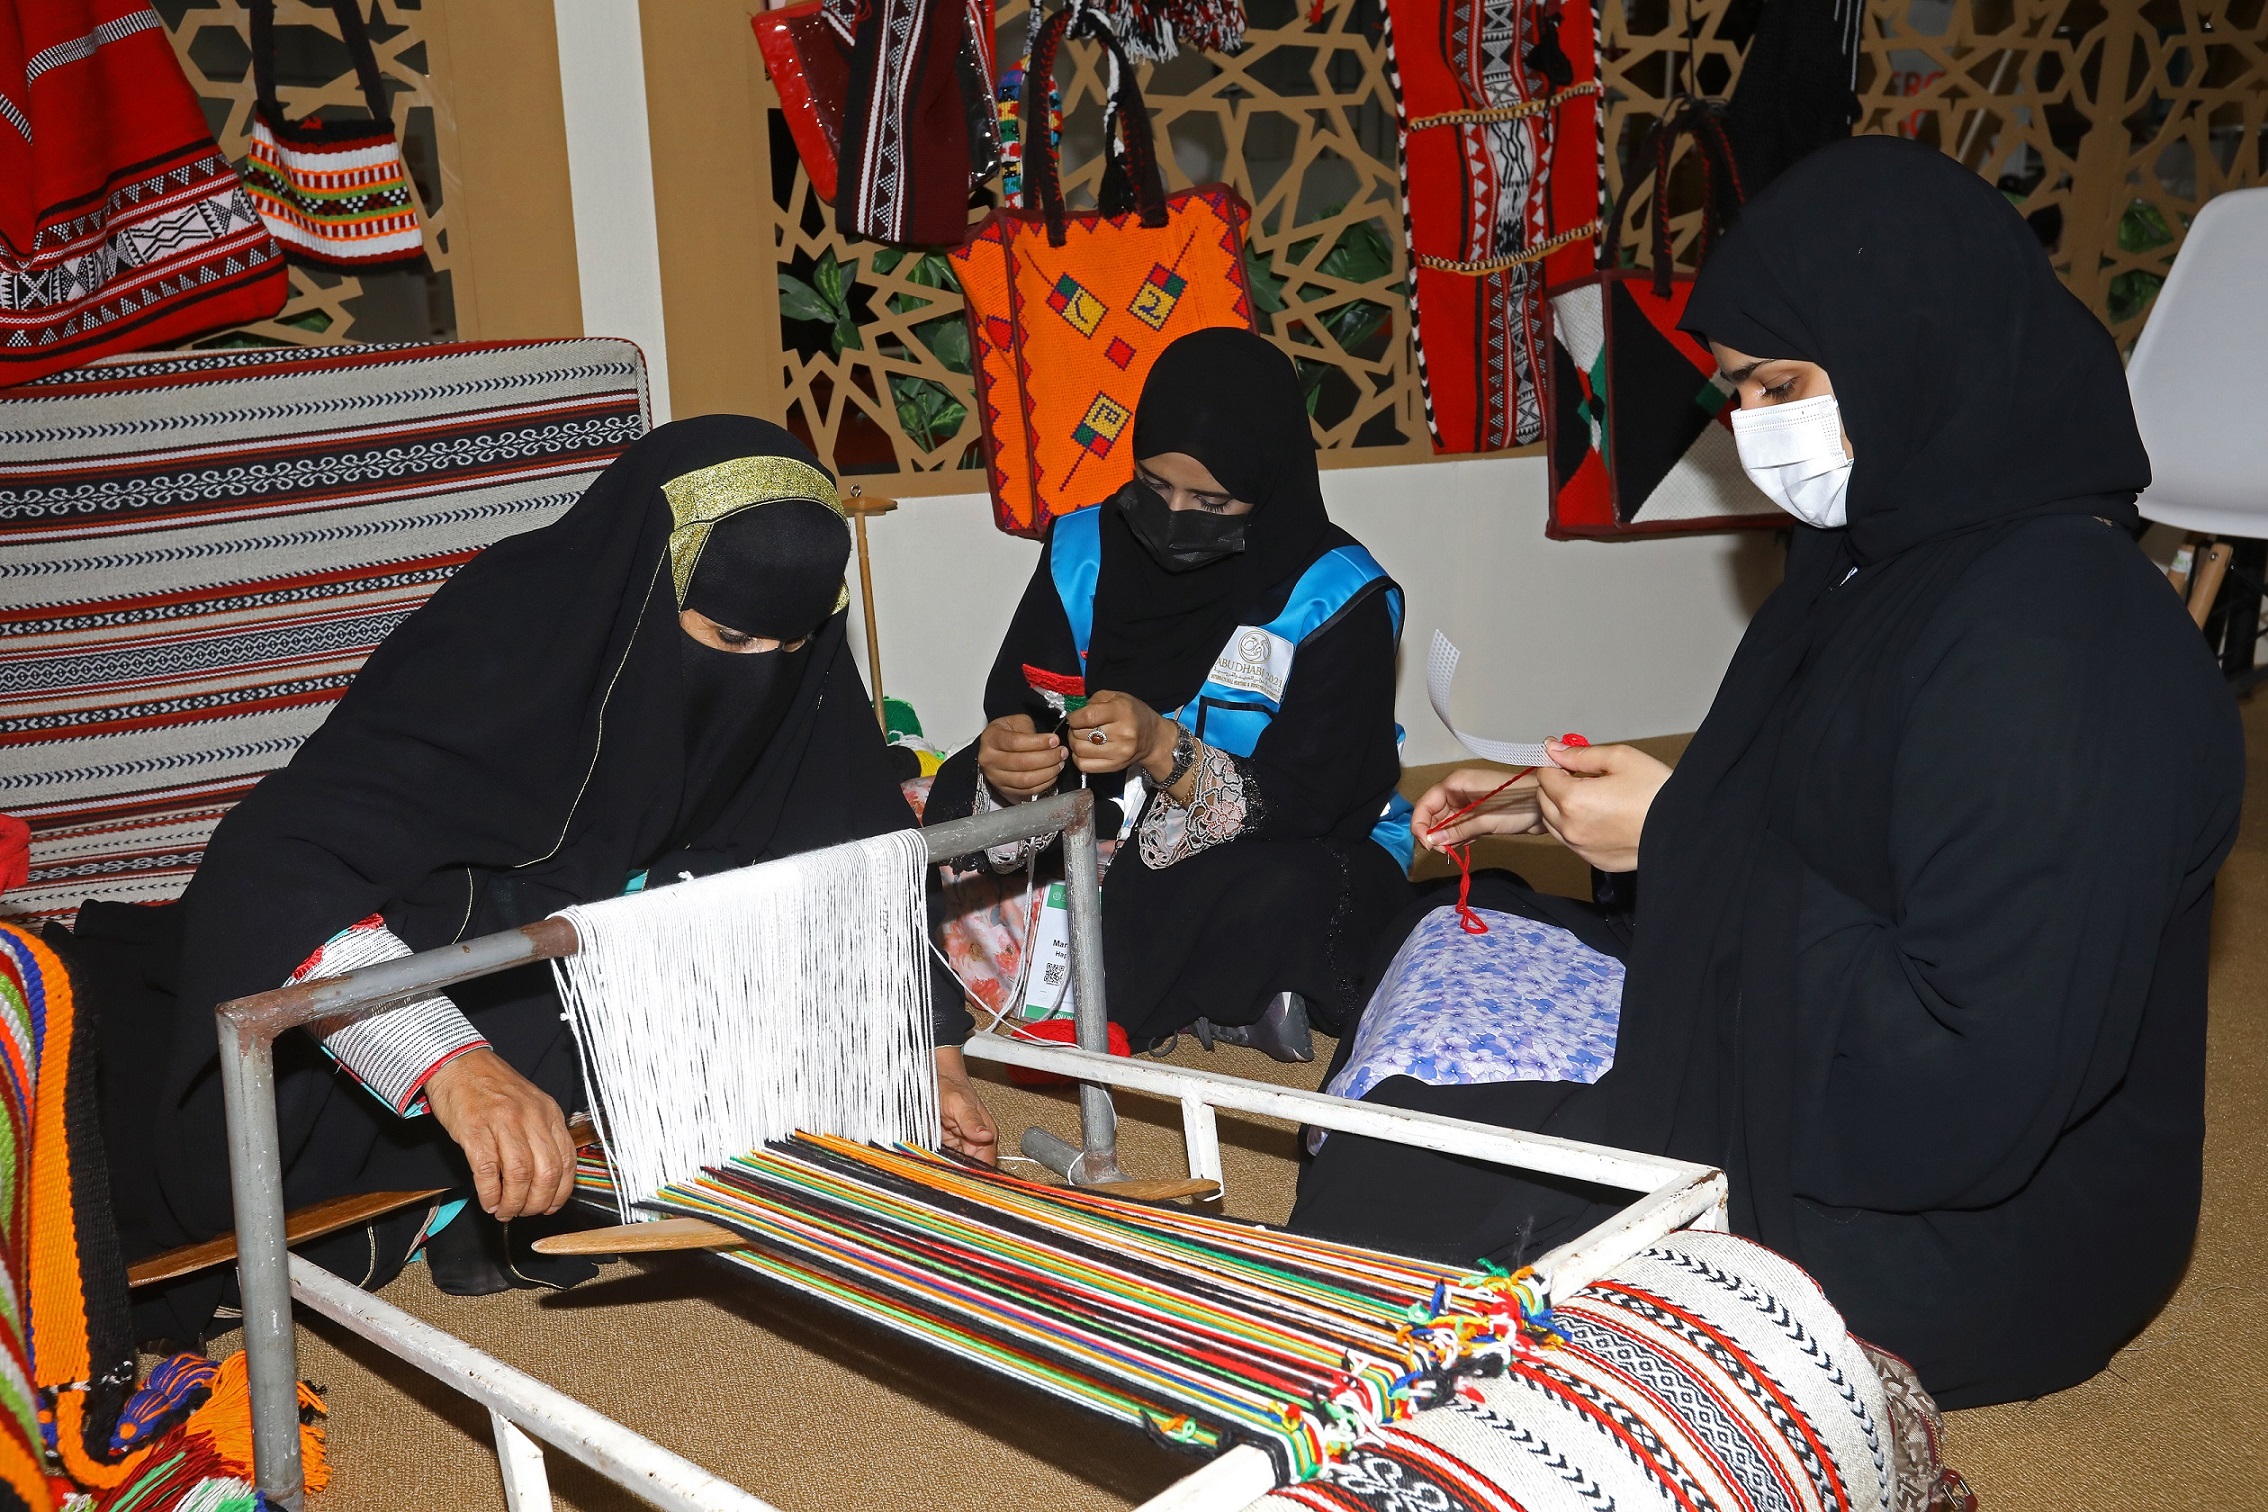 قطاع "الفنون والحرف اليدوية" في معرض أبوظبي للصيد يستعد لاستقطاب الزوار والسياح